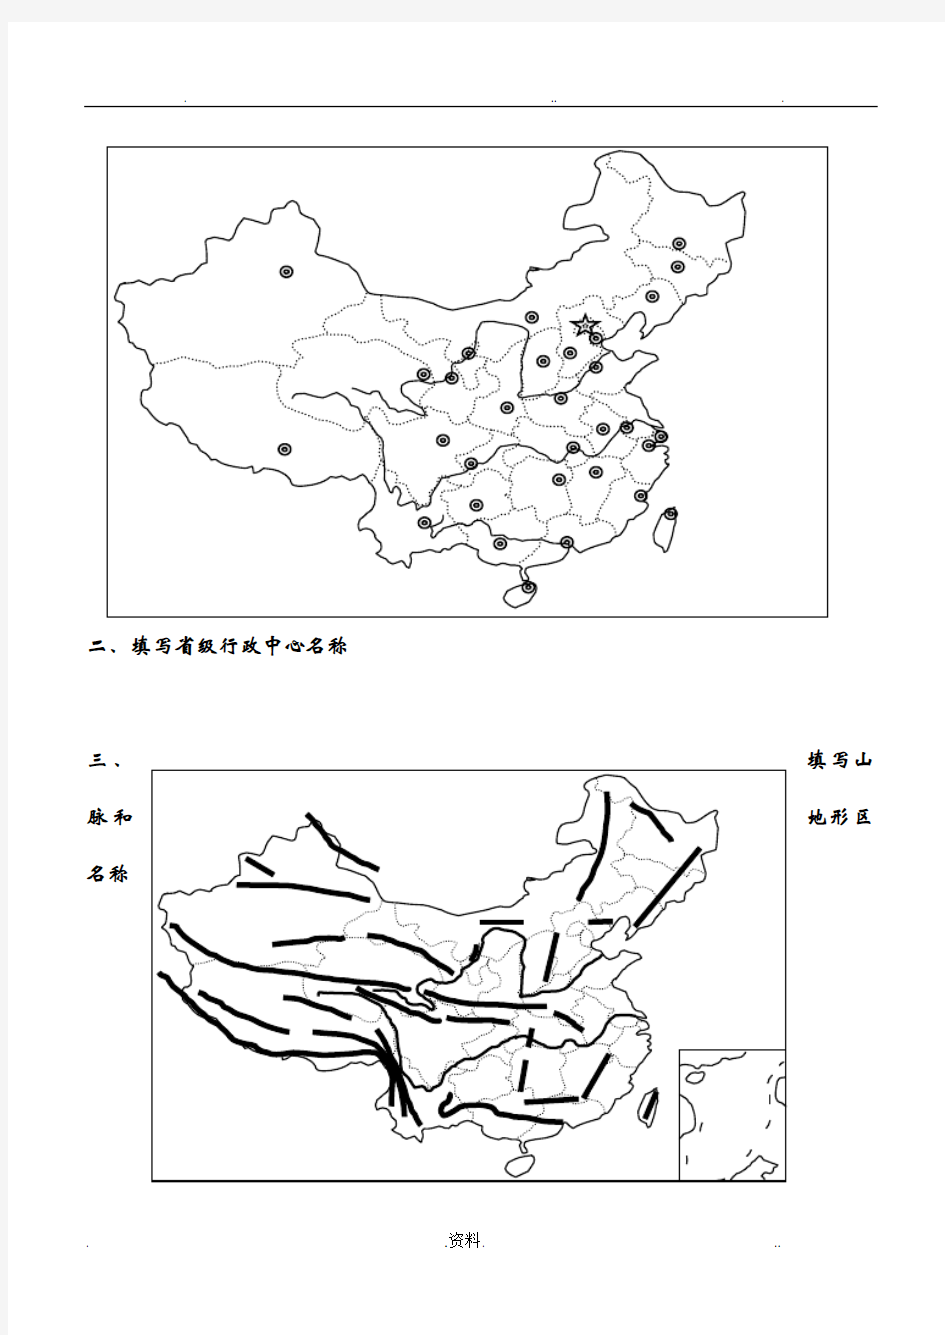 中国和世界地理填图训练合集